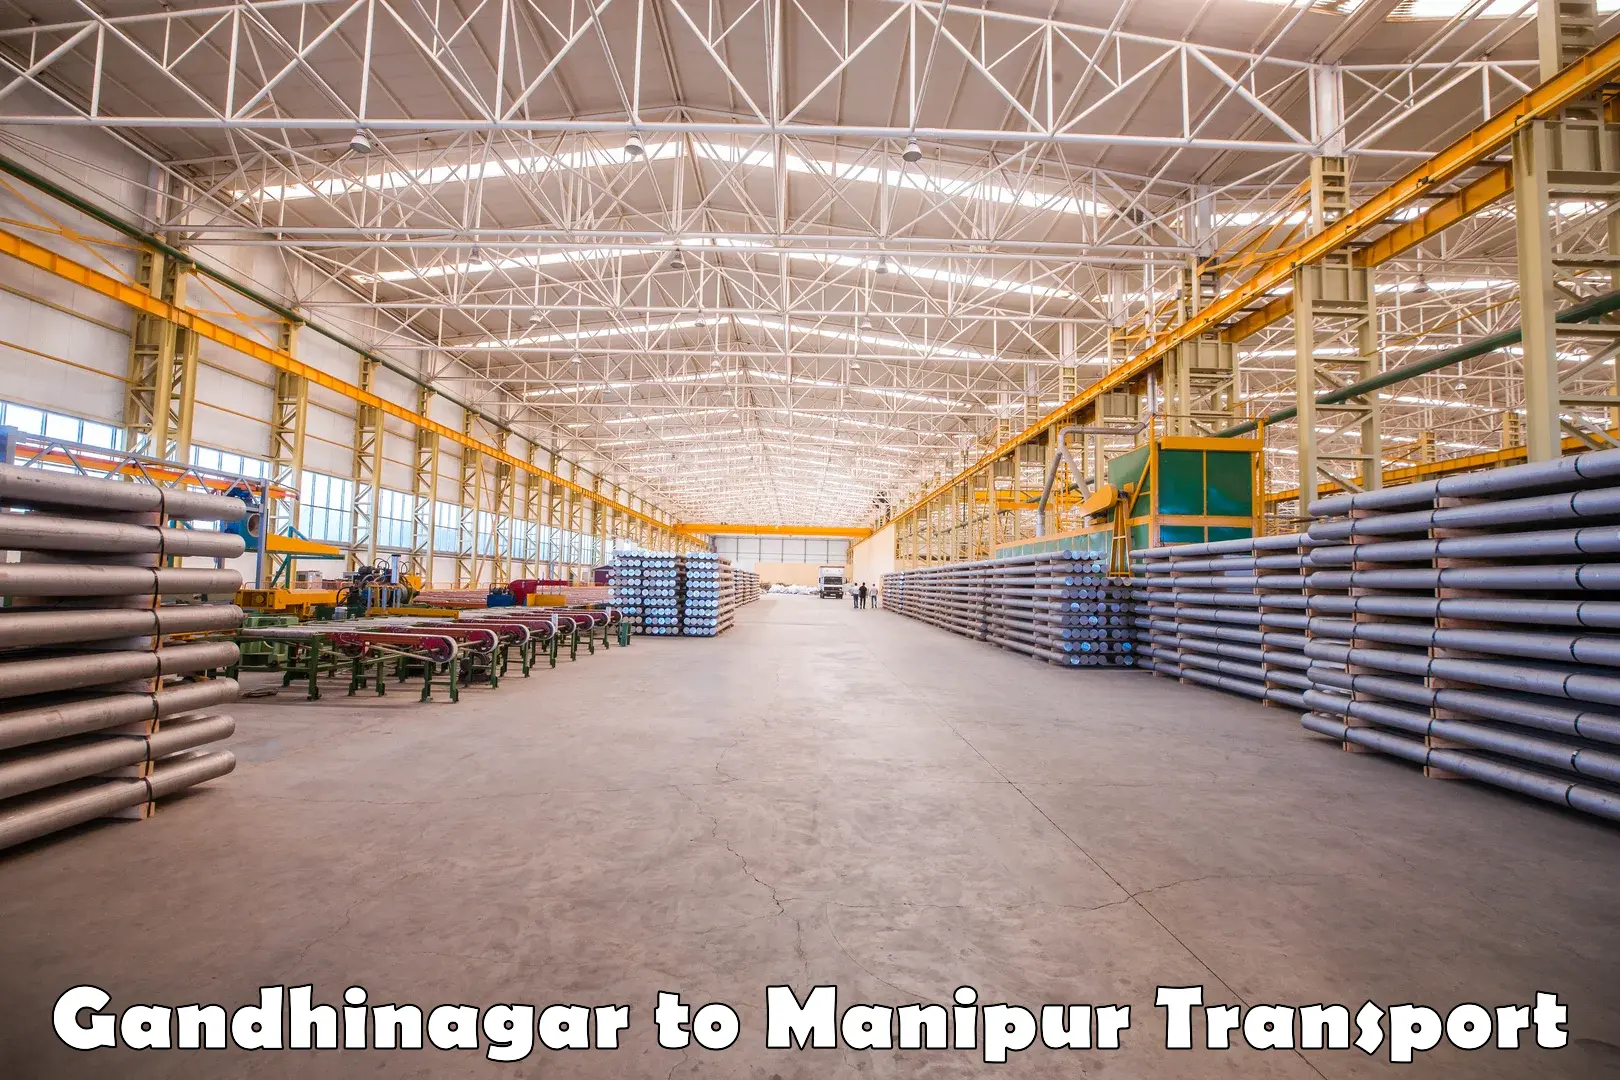 Air cargo transport services Gandhinagar to Chandel